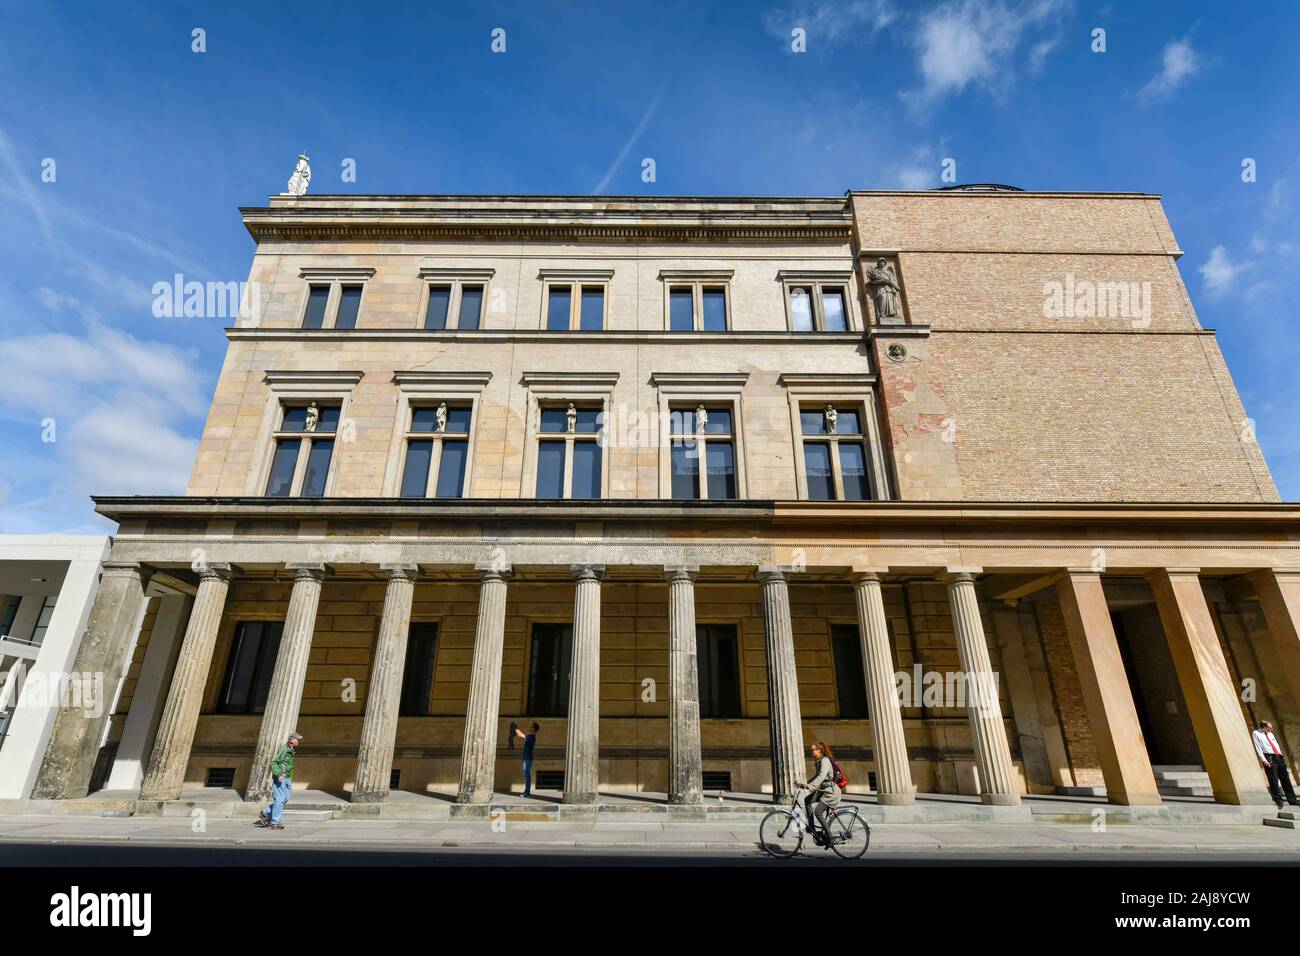 Neues Museum, Bodestraße, Museumsinsel, Mitte, Berlin, Deutschland Stock Photo